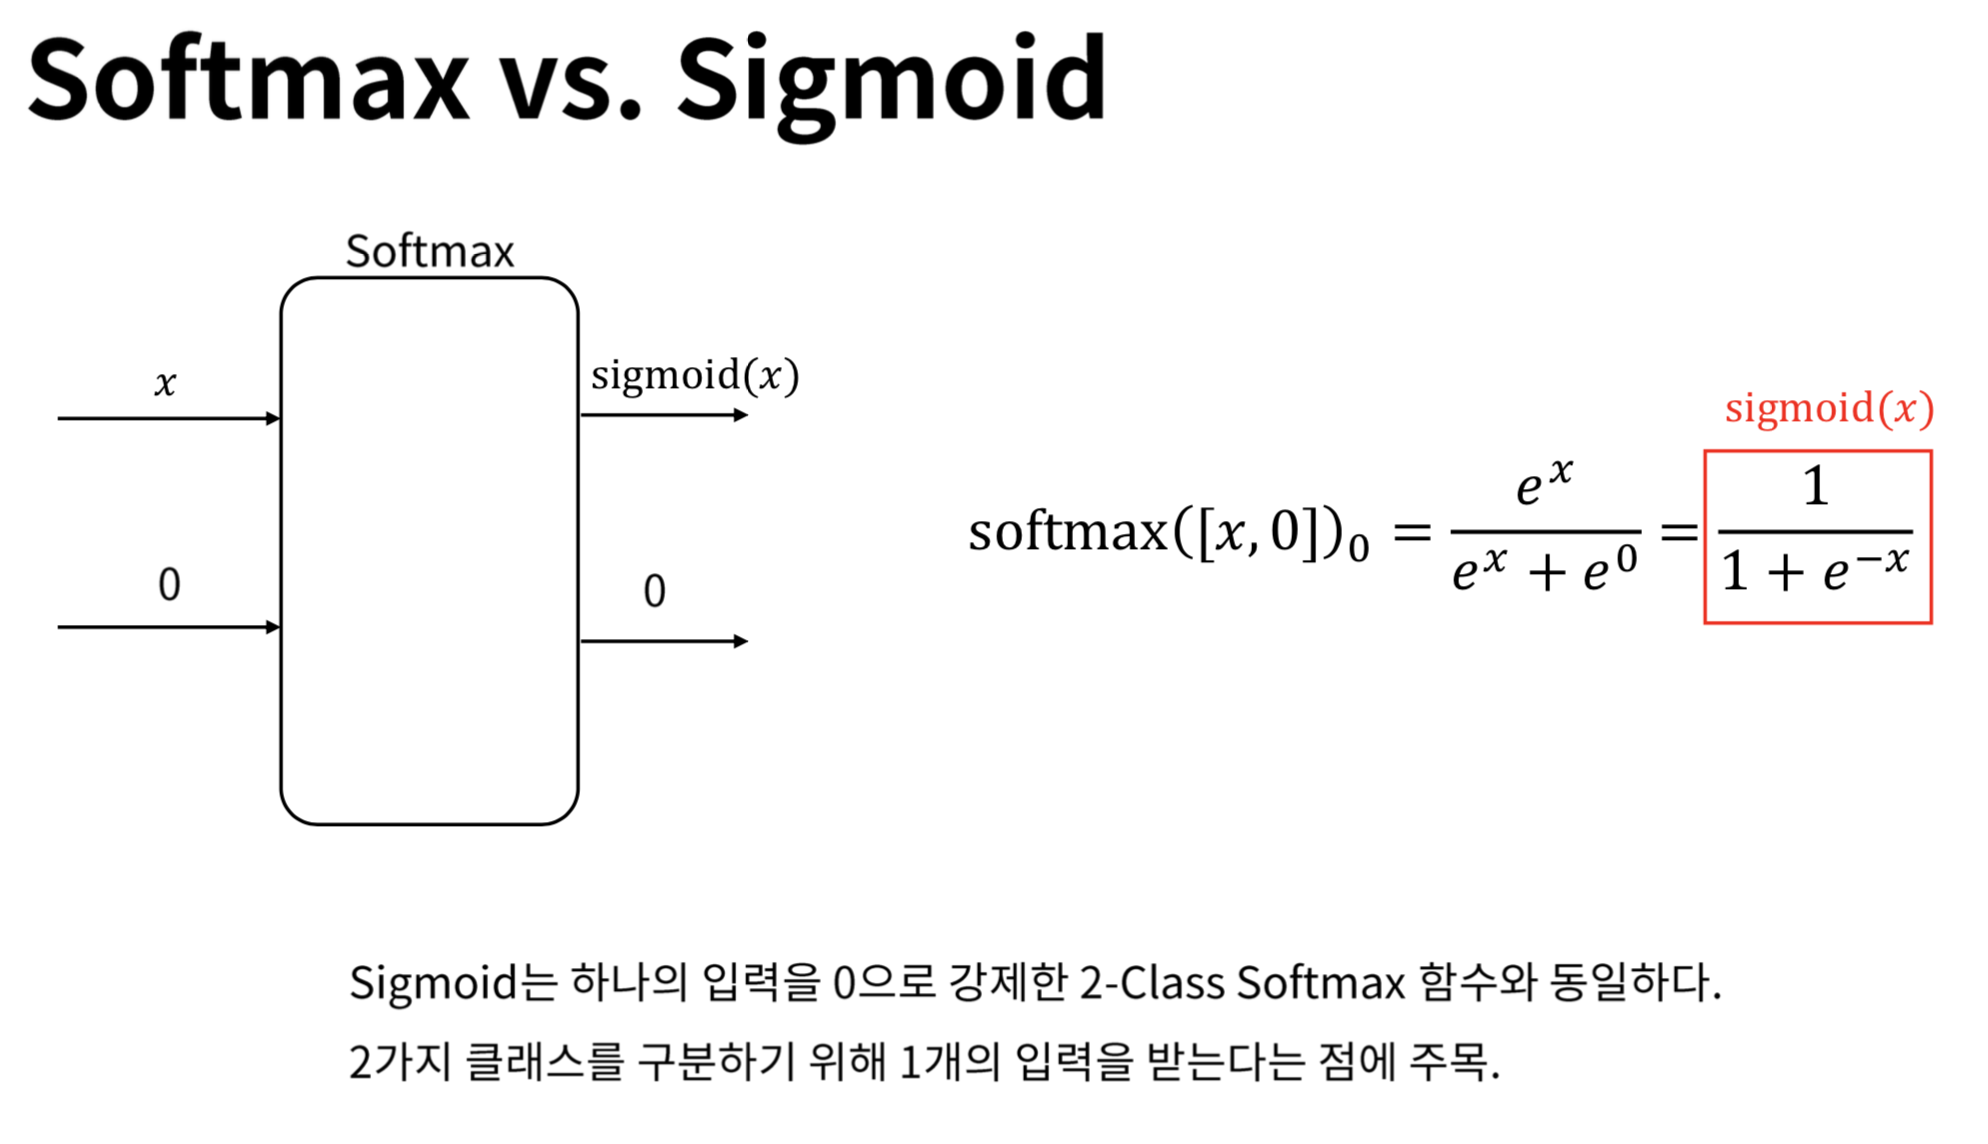 Softmax vs Sigmoid